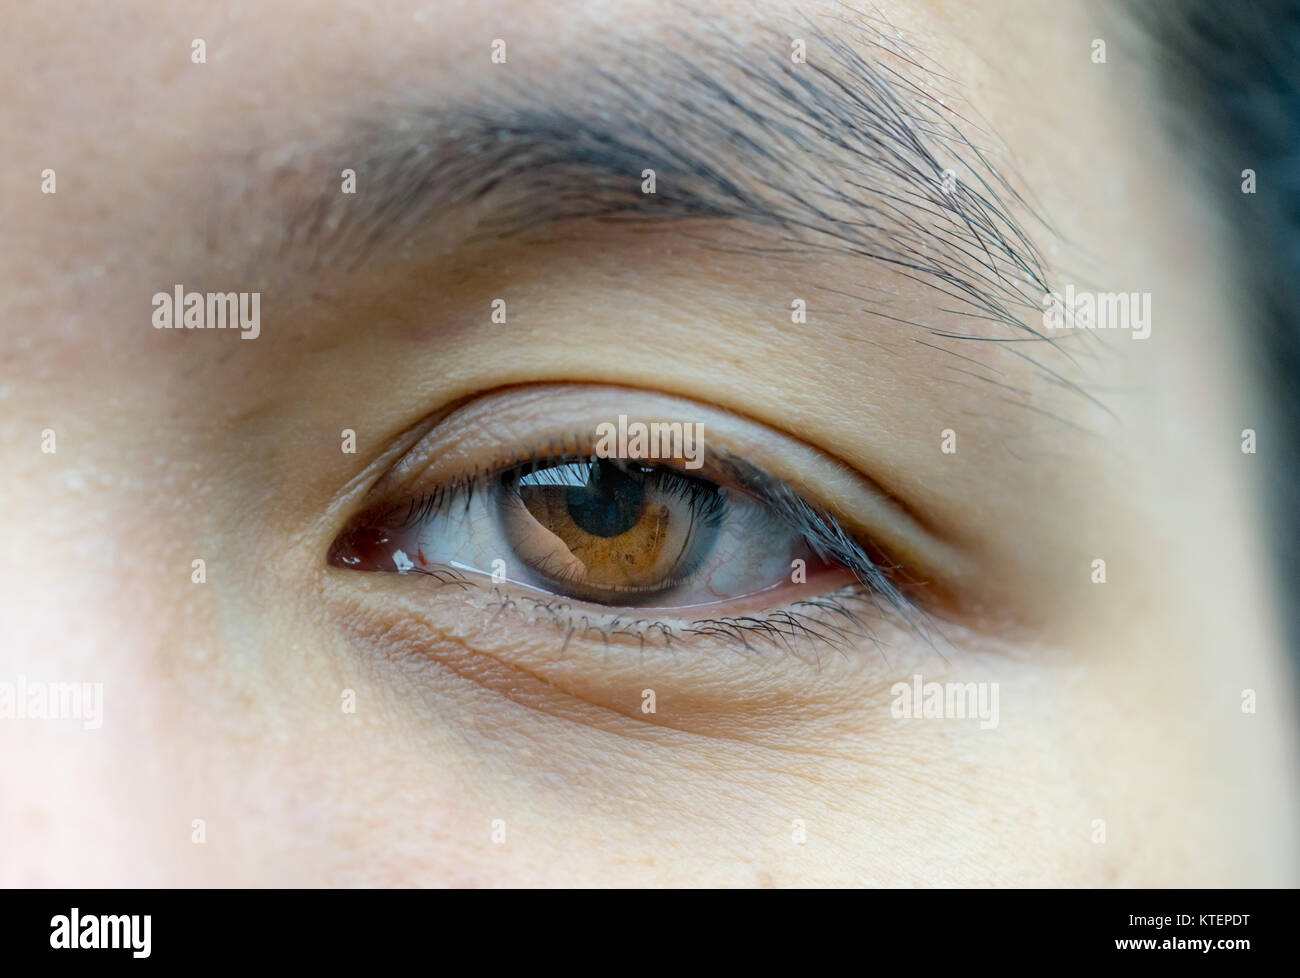 Augenlidoperation Stockfotos Und Bilder Kaufen Alamy